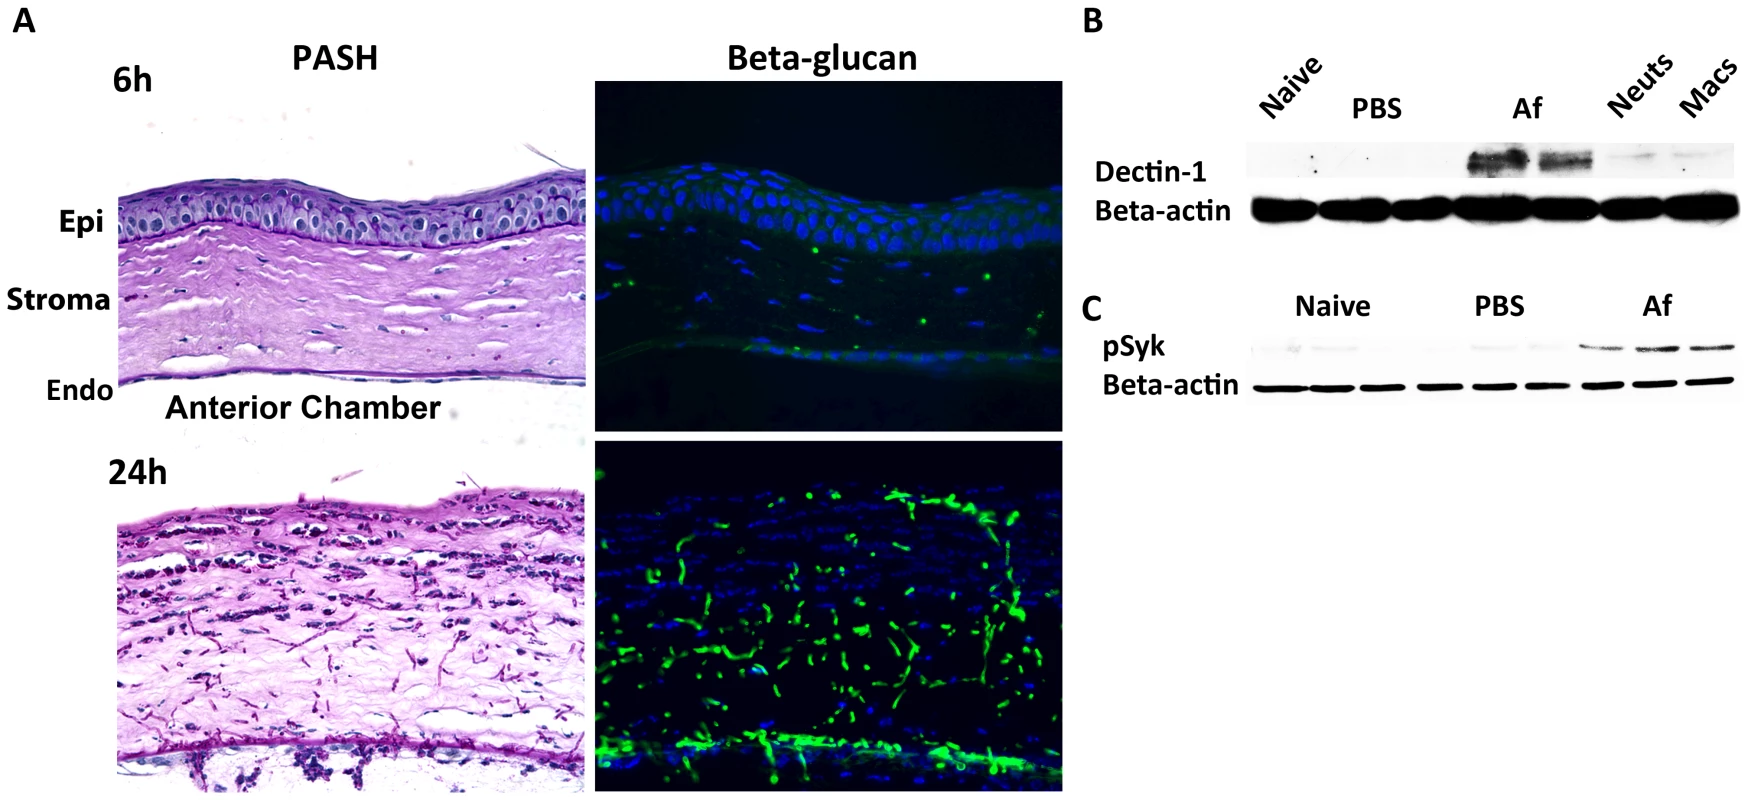 β-glucan expression and Dectin-1 signaling in <i>A. fumigatus</i> keratitis.